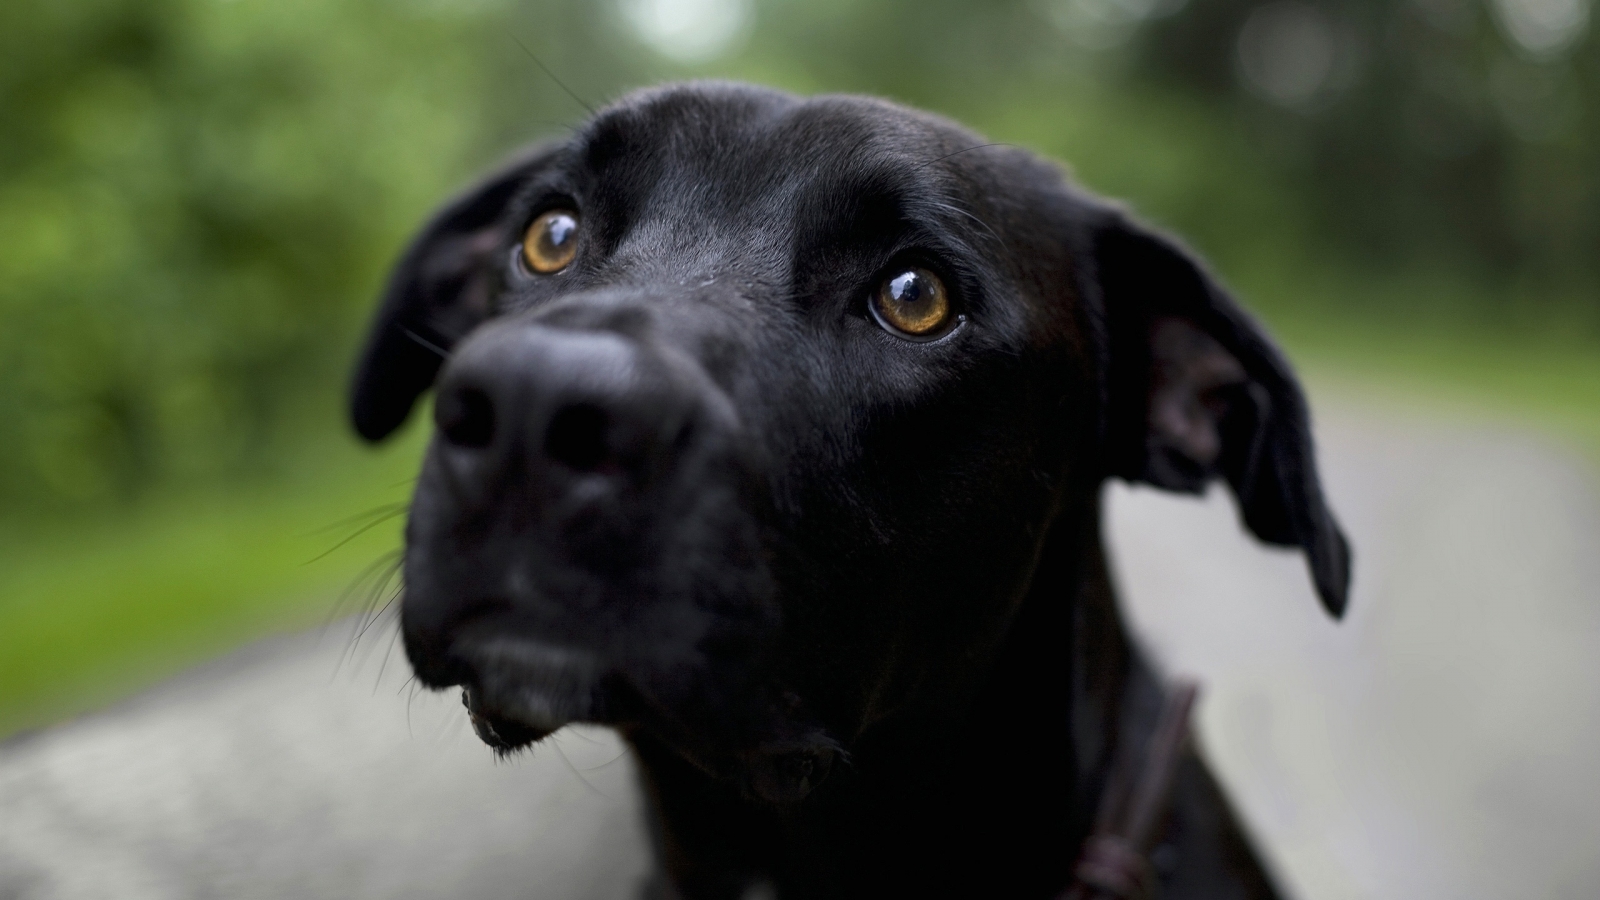 Lovely black dog for 1600 x 900 HDTV resolution